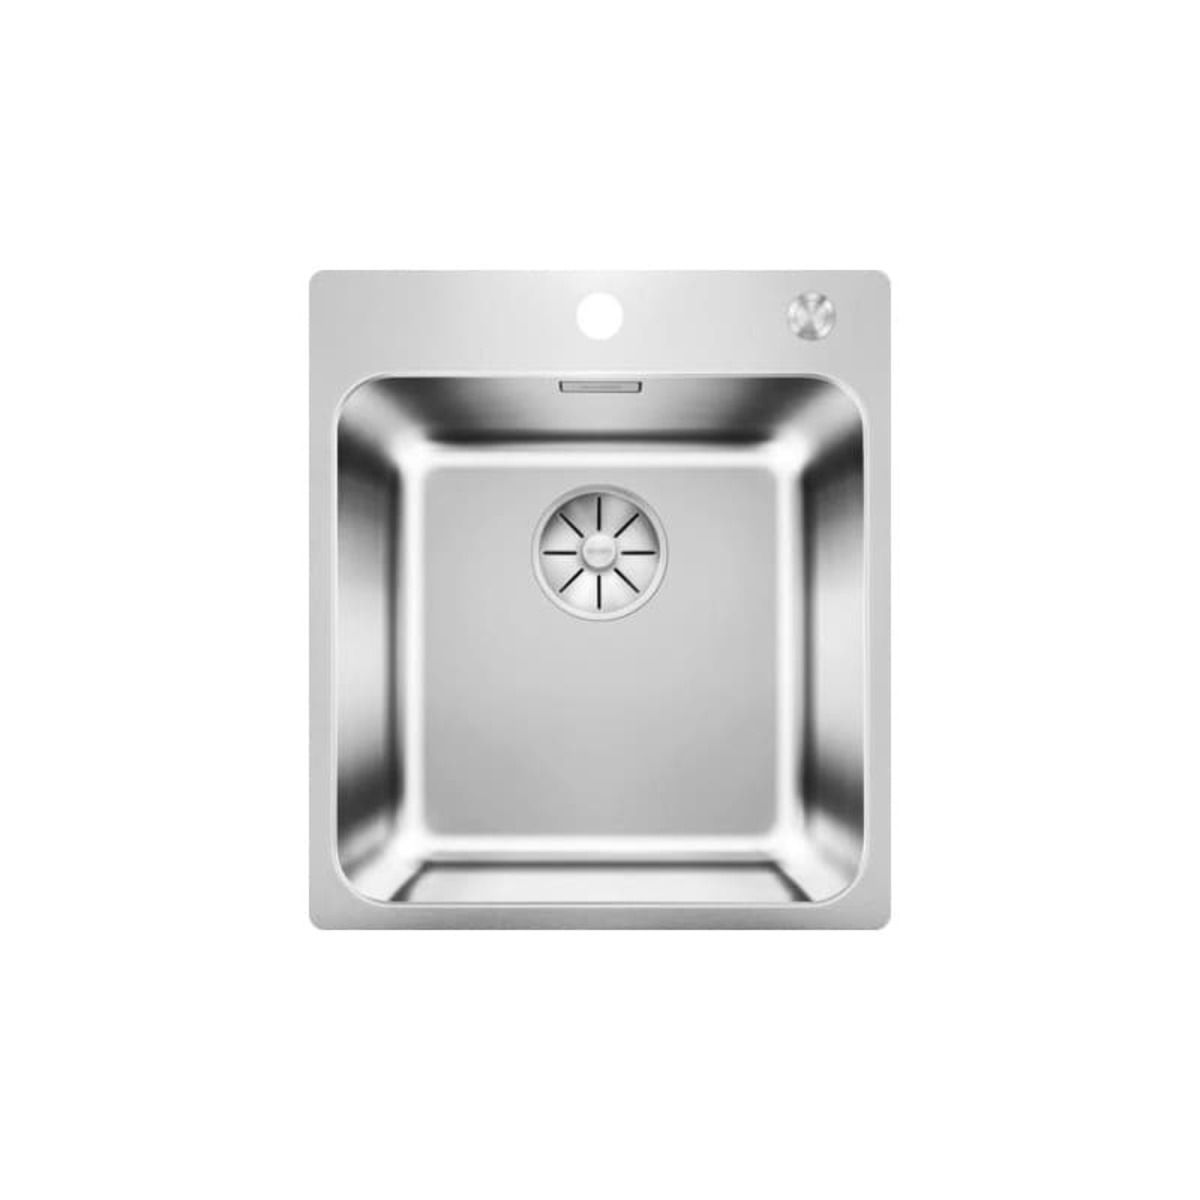 Dřez Blanco Solis 400-IF/A, Push Control, kartáčovaný 526119 - Siko - koupelny - kuchyně